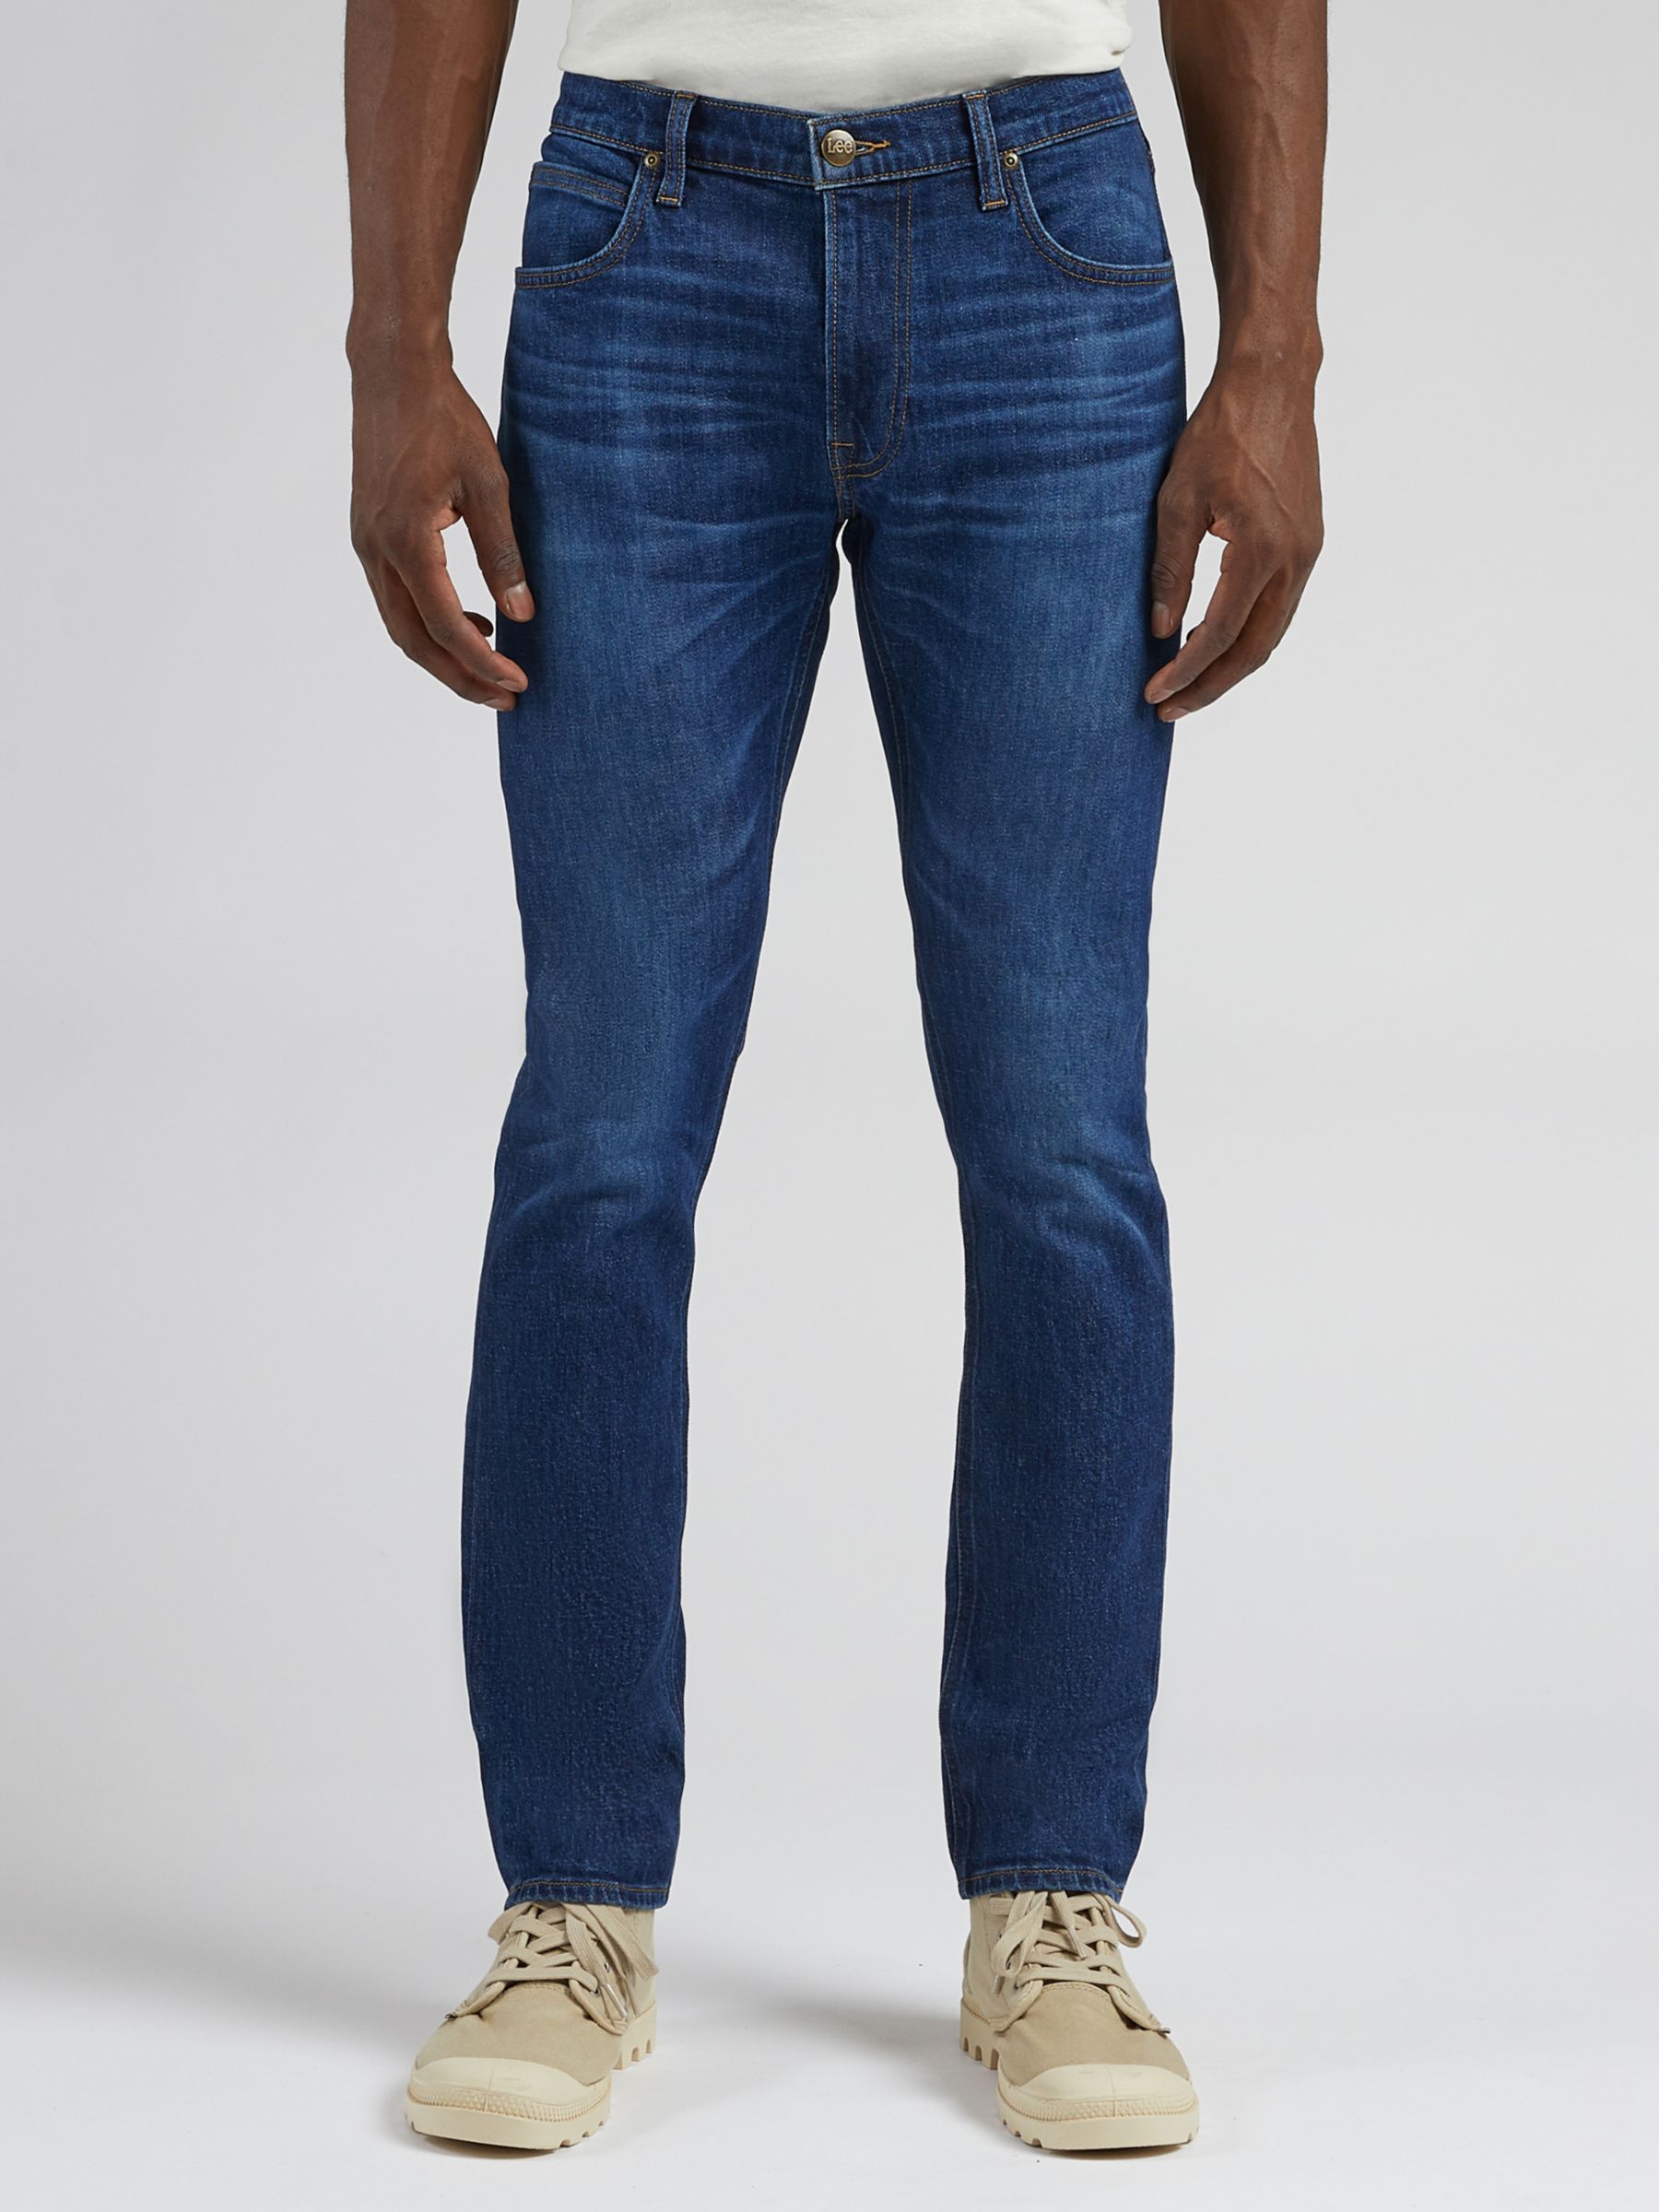 Lee Luke Dark Worn Slim Fit Jeans, Blue at John Lewis & Partners